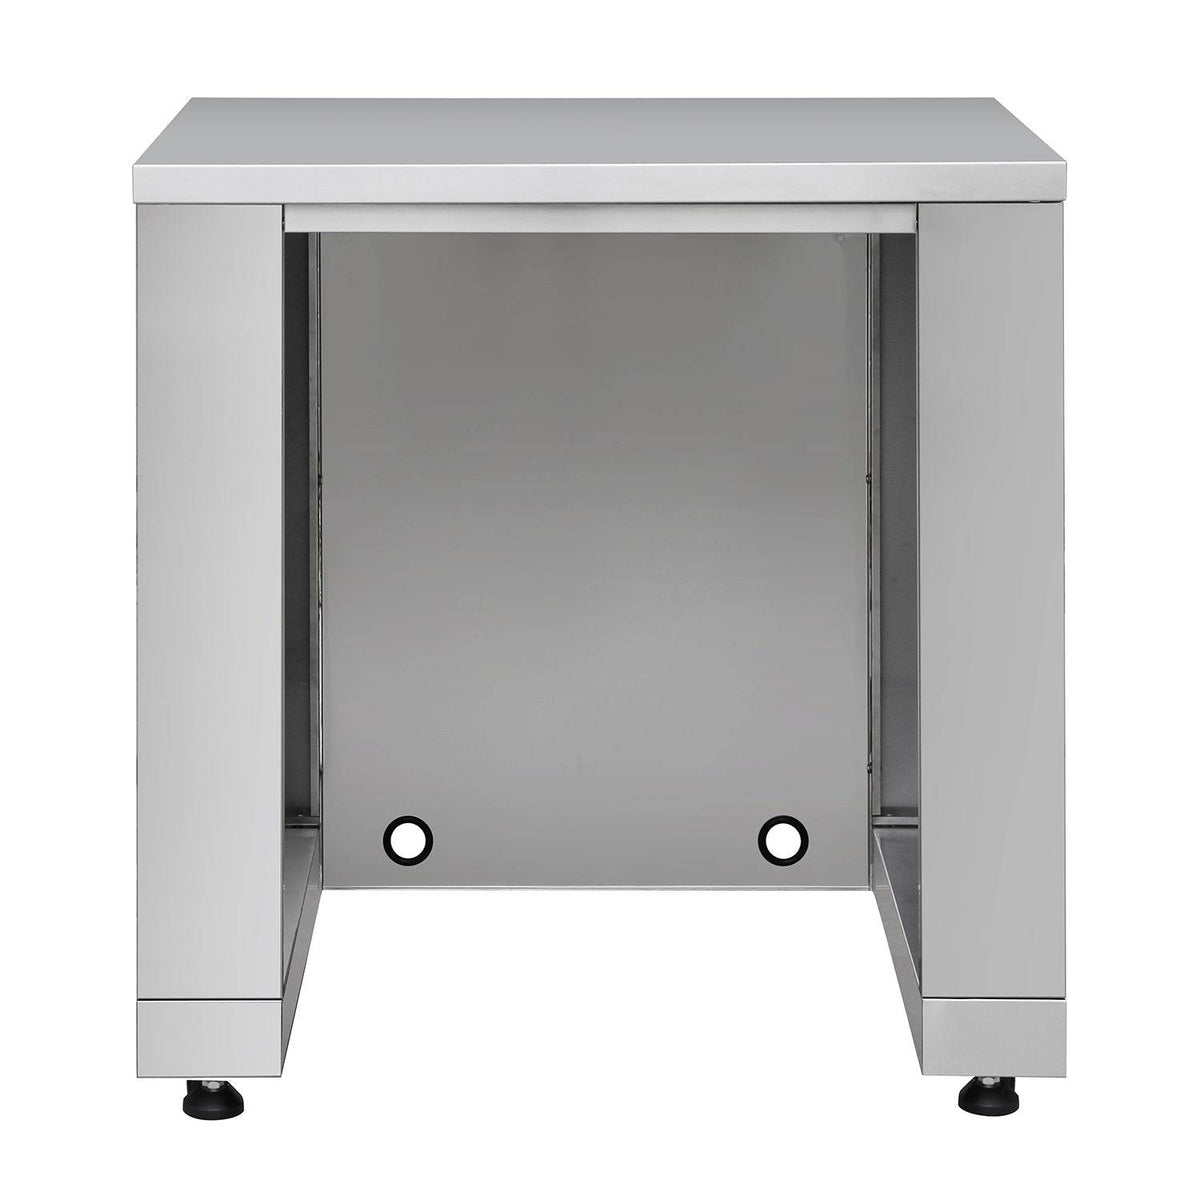 Fobest Stainless Steel Outdoor Kitchen Refrigerator Cabinet in Stainless Steel - Cabinet-Fobest Appliance